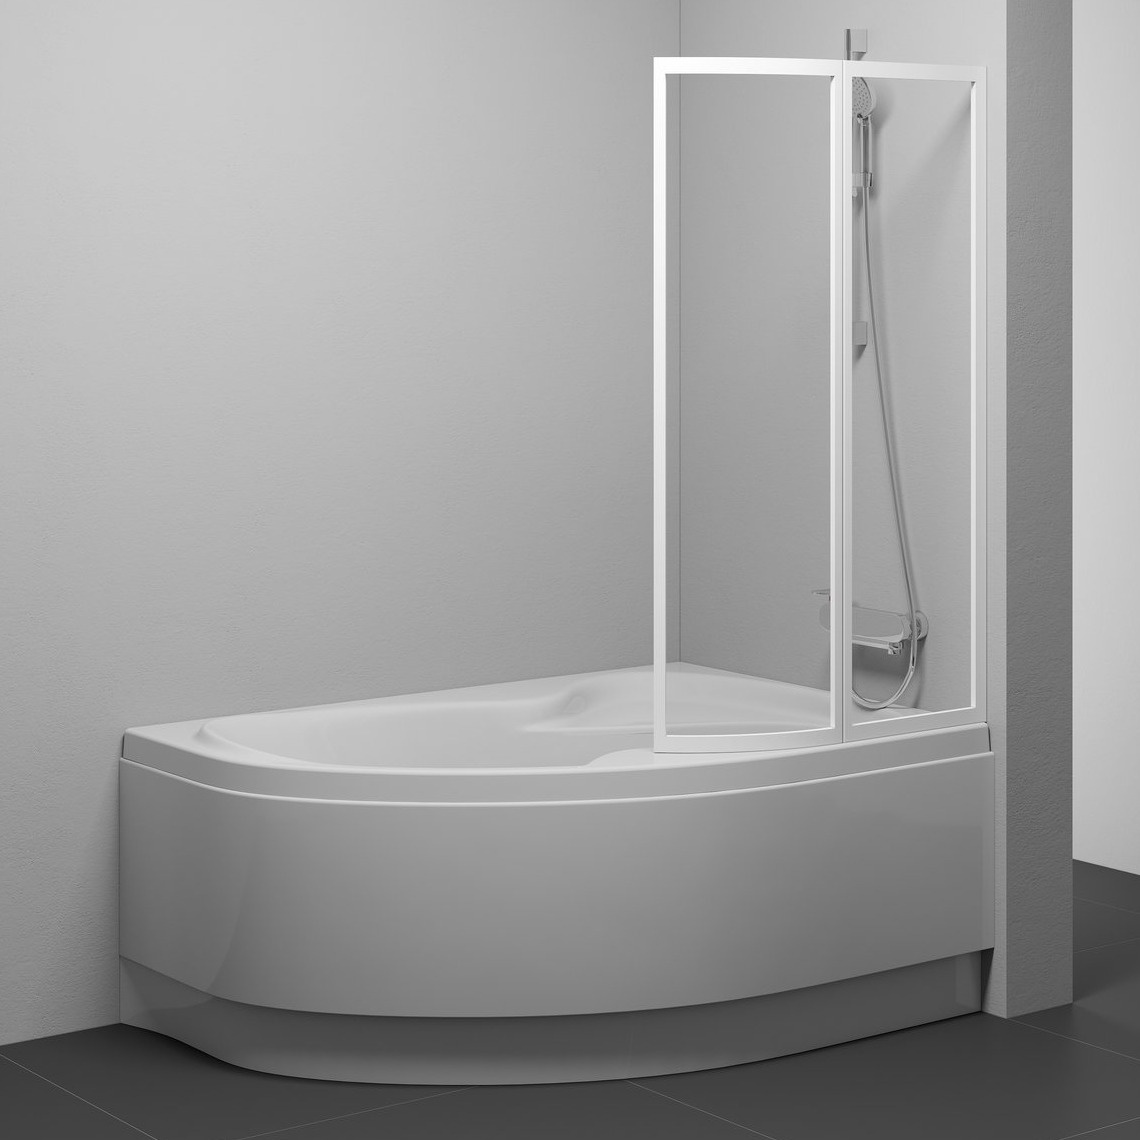 Шторка стеклянная для ванны двухсекционная распашная 150x89см RAVAK ROSA VSK2 R стекло прозрачное 3мм профиль белый 76P7010041